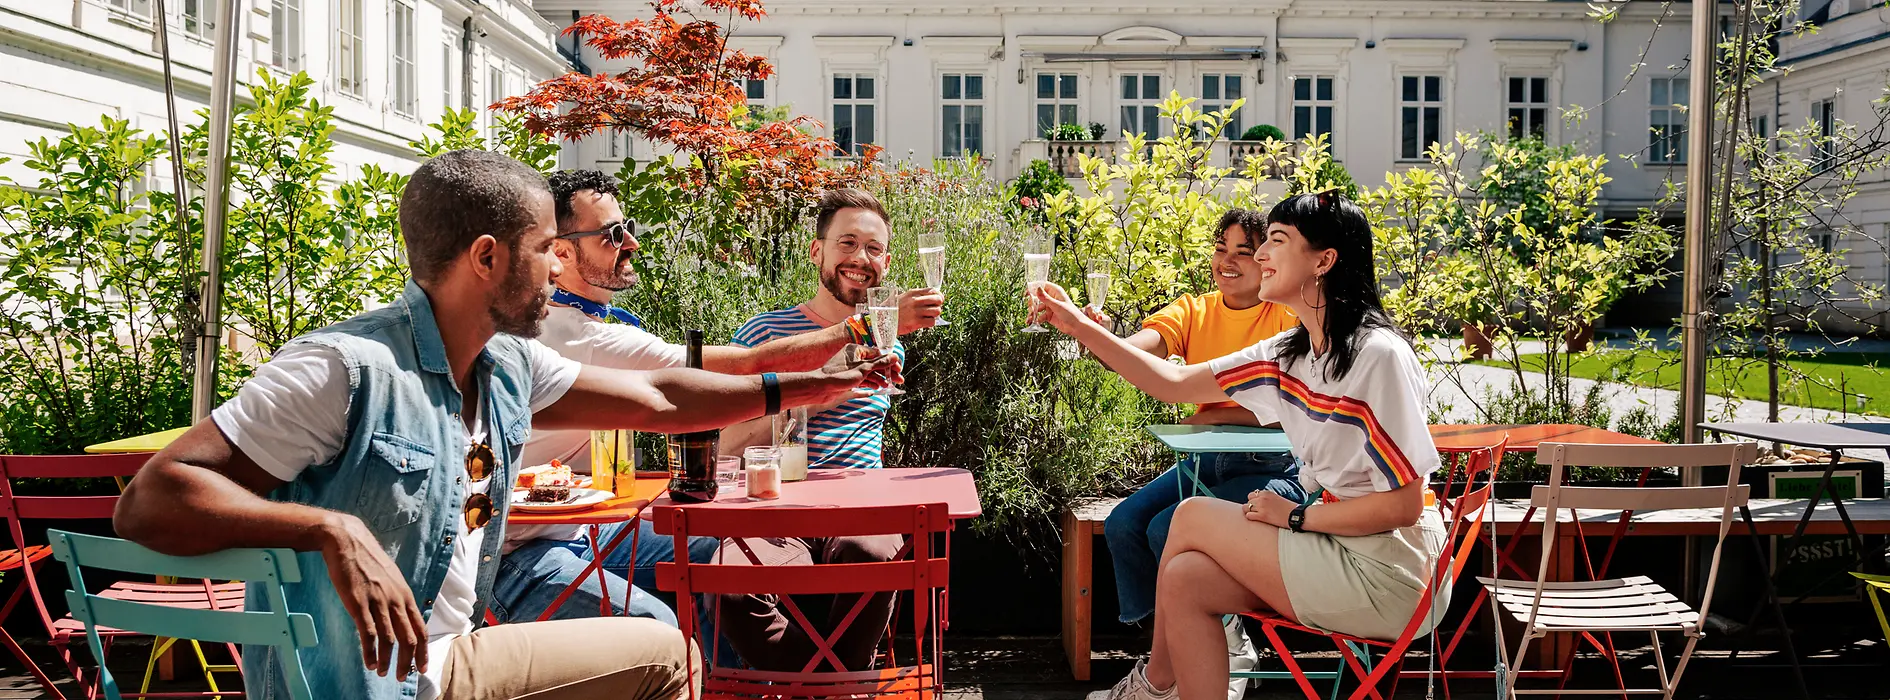 Fiatalok csoportja együtt iszik egy Schanigarten kerthelyiségben